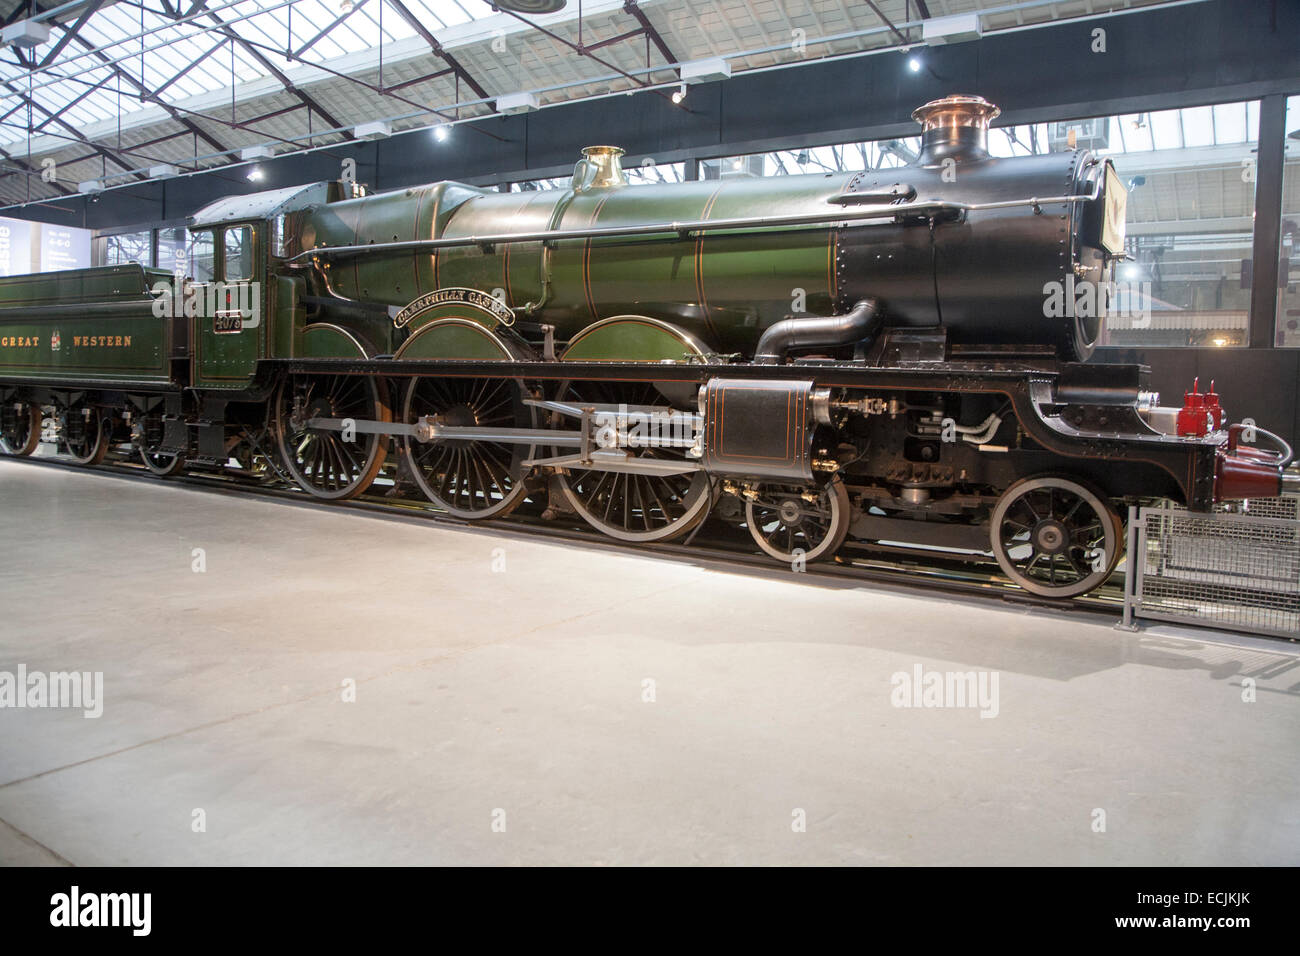 GWR il museo dei treni a vapore Swindon, Inghilterra, Regno Unito più veloce del mondo treno Cheltenham Flyer Castello di Caerphilly Foto Stock